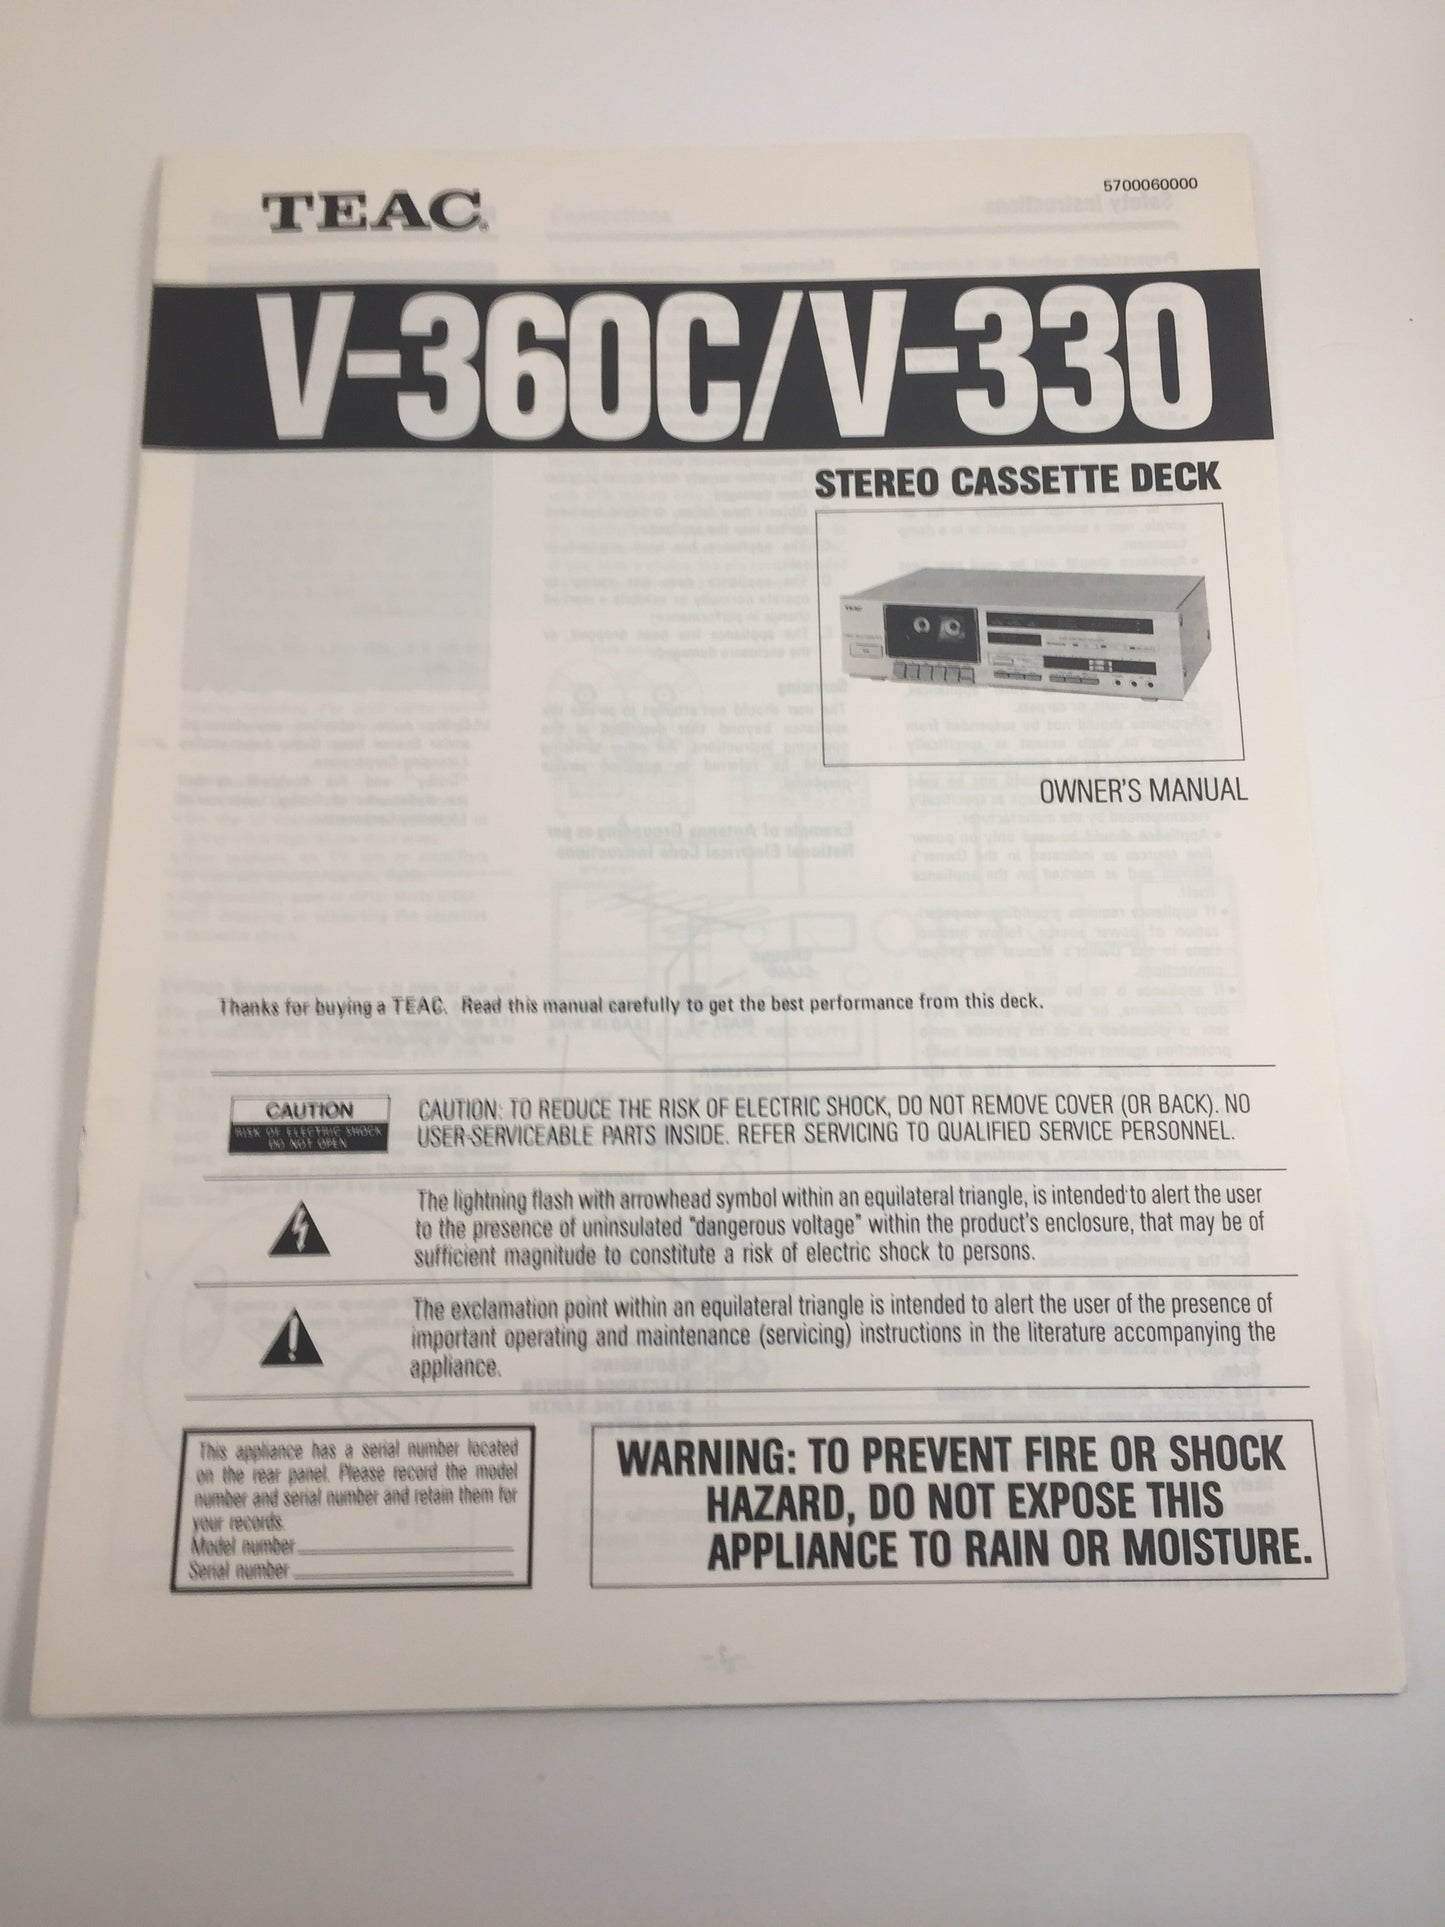 Teac V-360C/V-330 Stereo Casssette Deck Owner's Manual